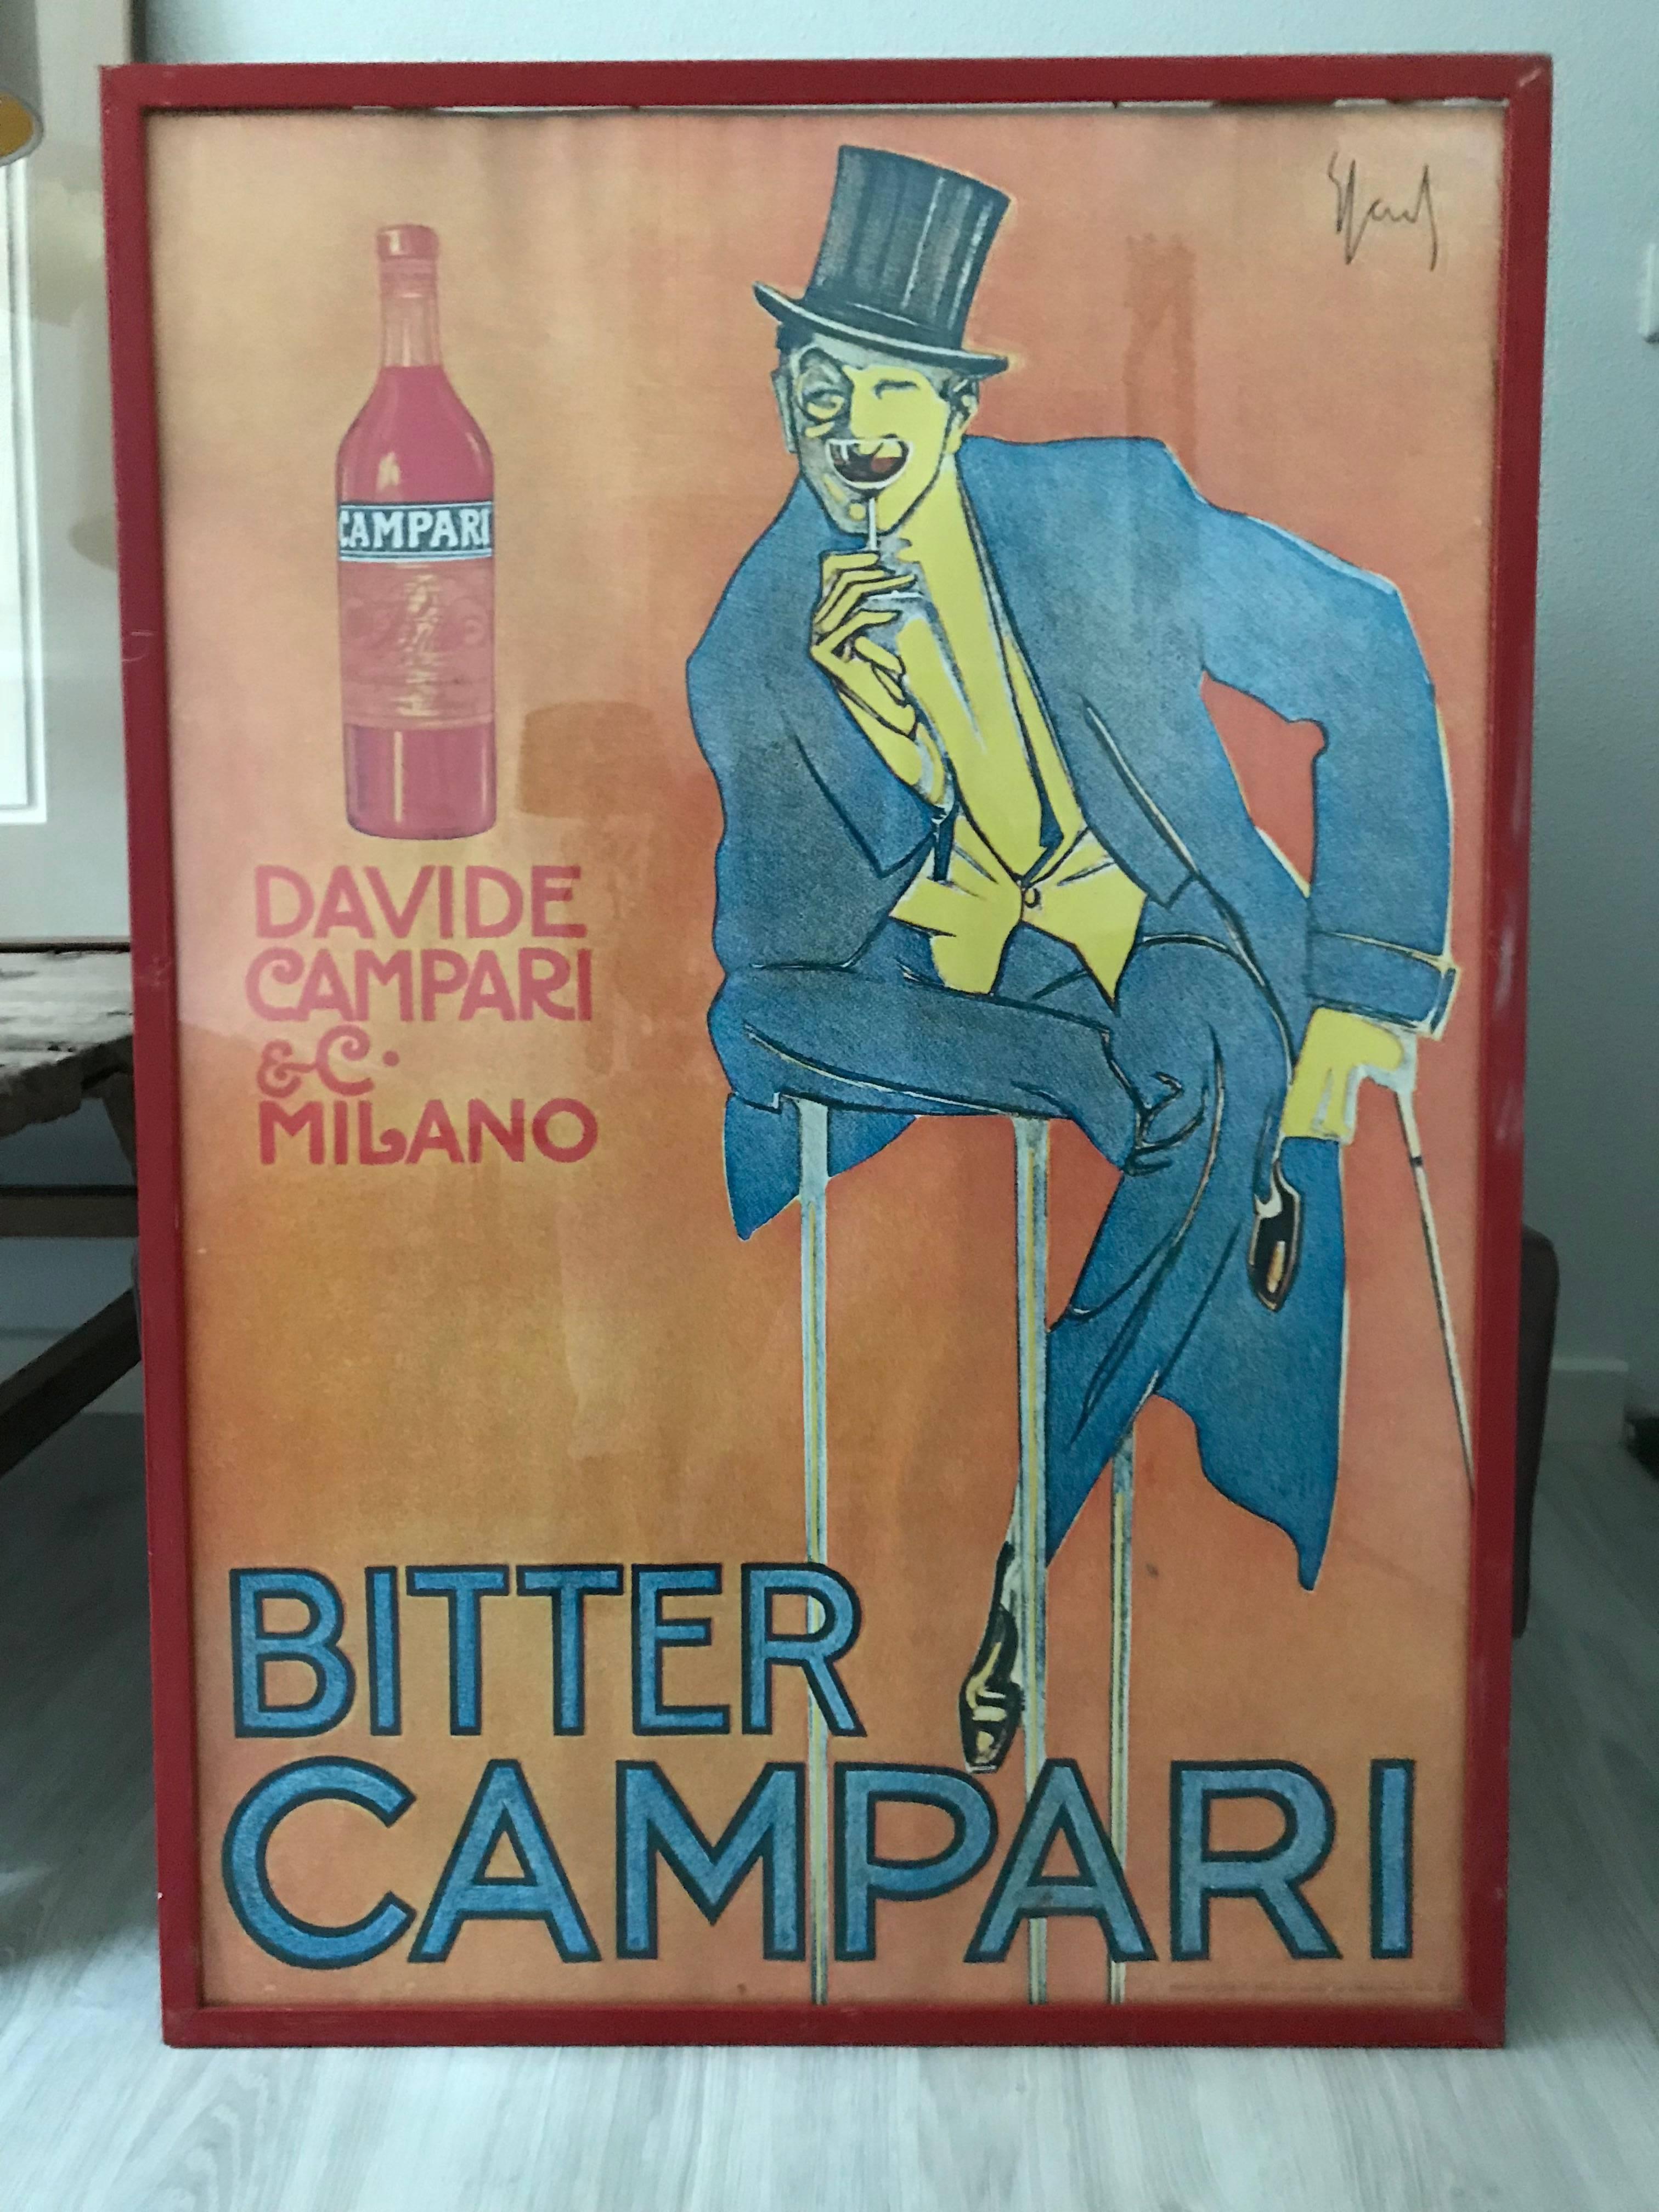 Bitter Campari poster by Enrico Sacchetti, Davide Campari & C, Milano, 1921.